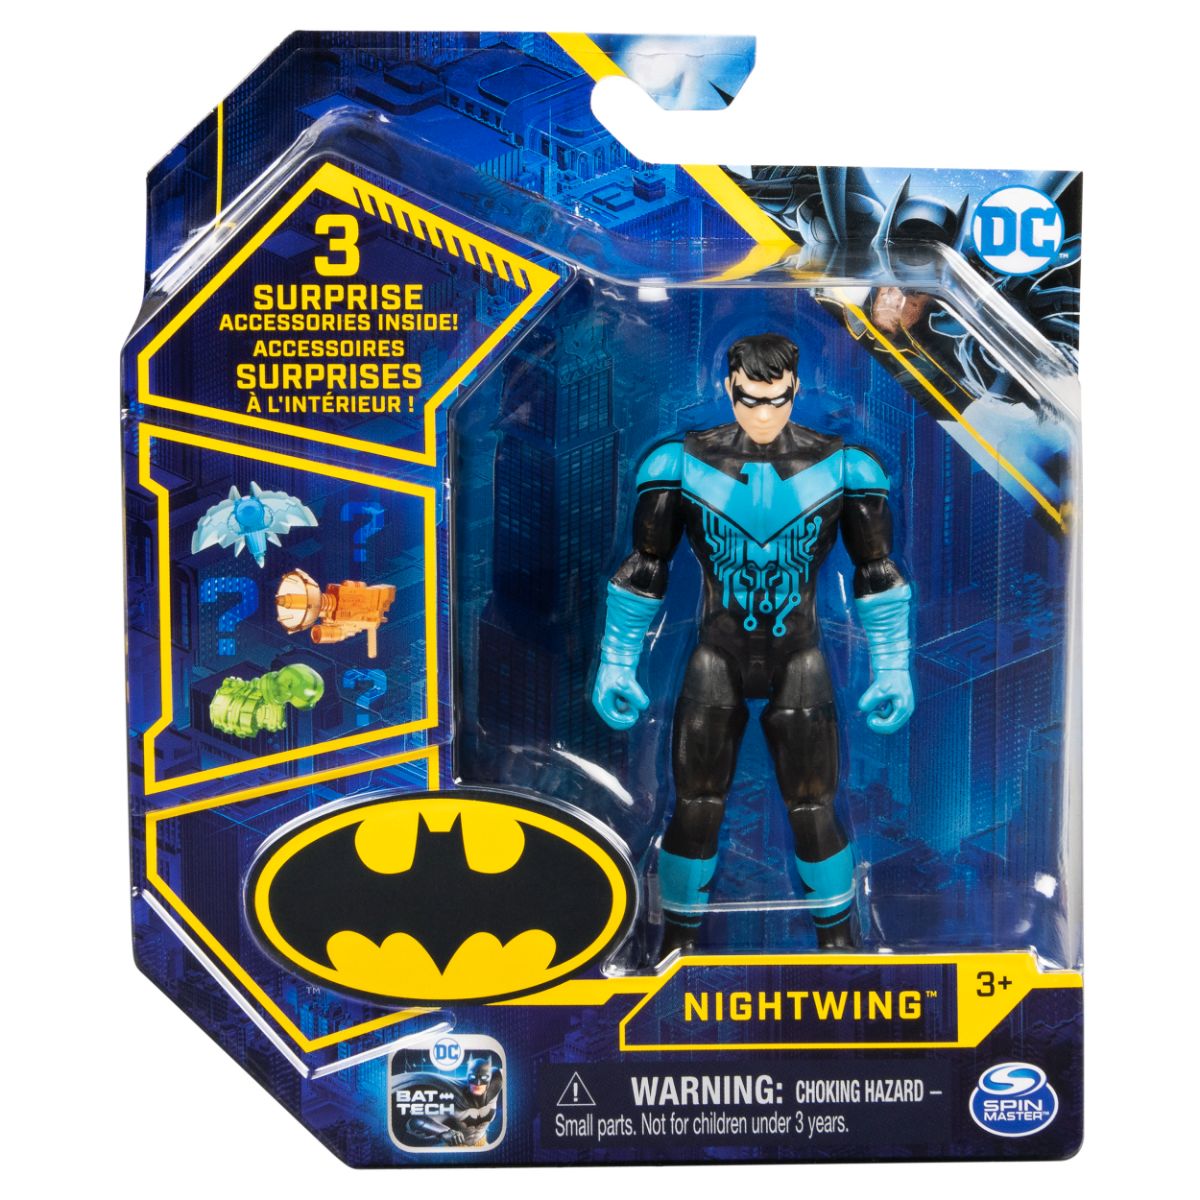 Set Figurina cu accesorii surpriza Batman, Nightwing 20131337 20131337